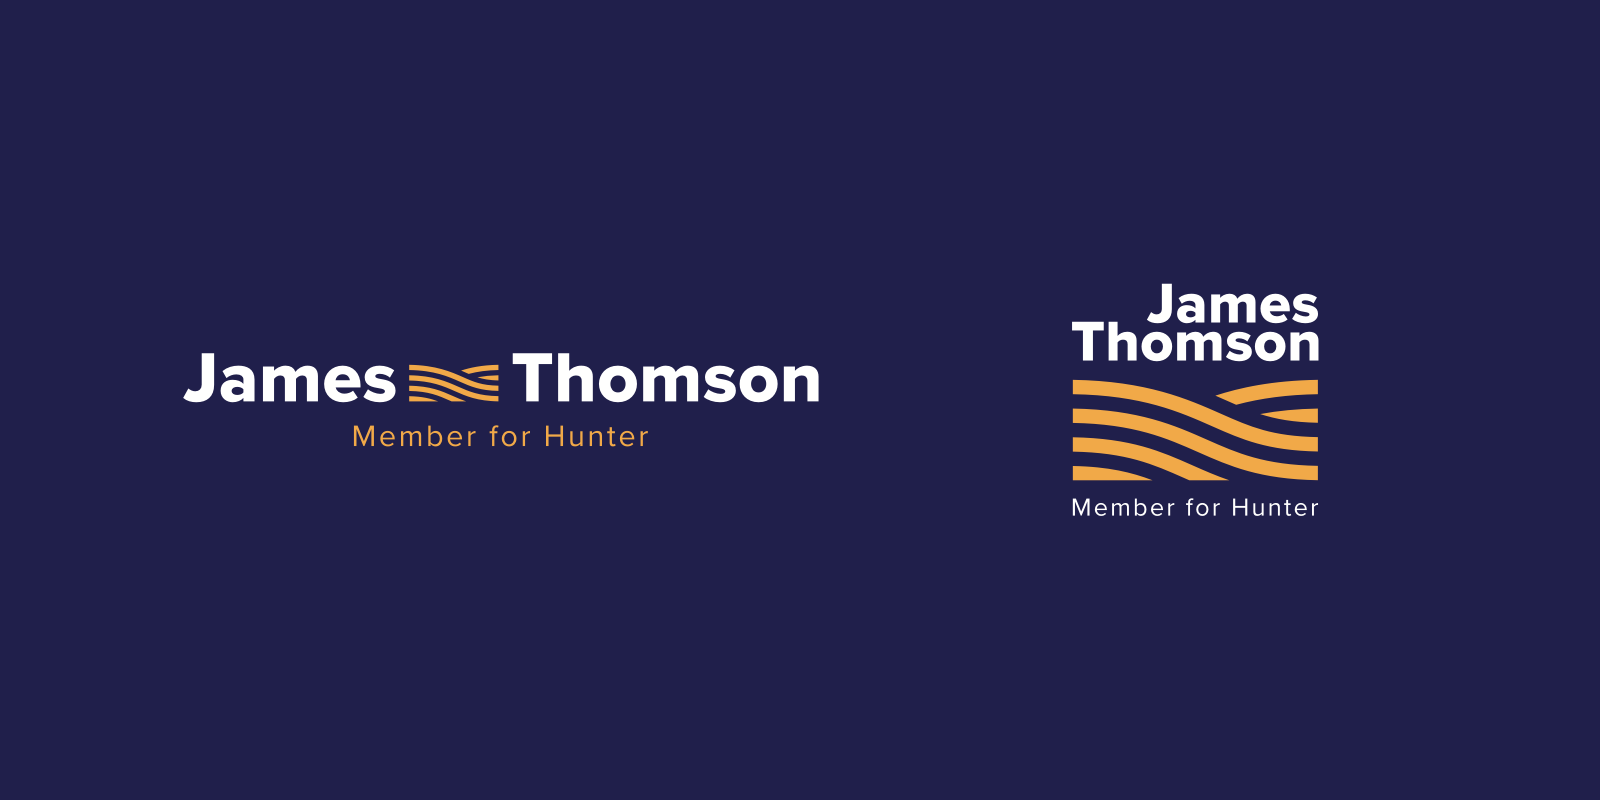 james-thomson-logo-set